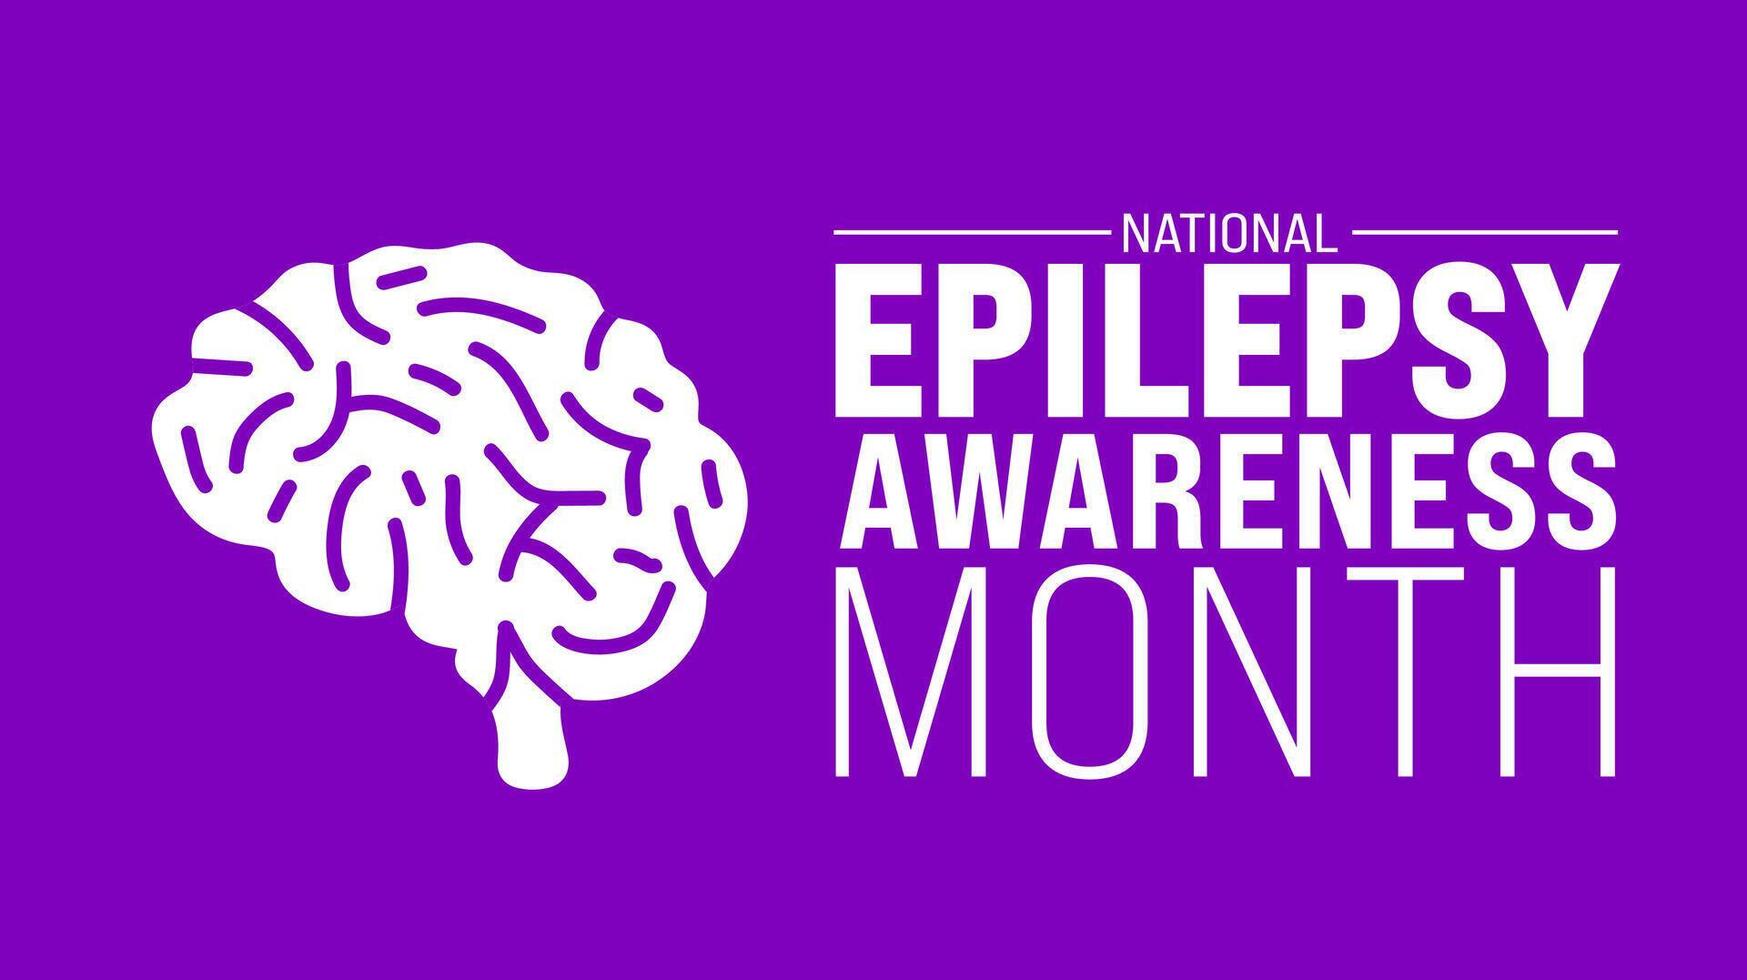 März ist Epilepsie Bewusstsein Monat Hintergrund Vorlage. Urlaub Konzept. verwenden zu Hintergrund, Banner, Plakat, Karte, und Poster Design Vorlage mit Text Inschrift und Standard Farbe. Vektor